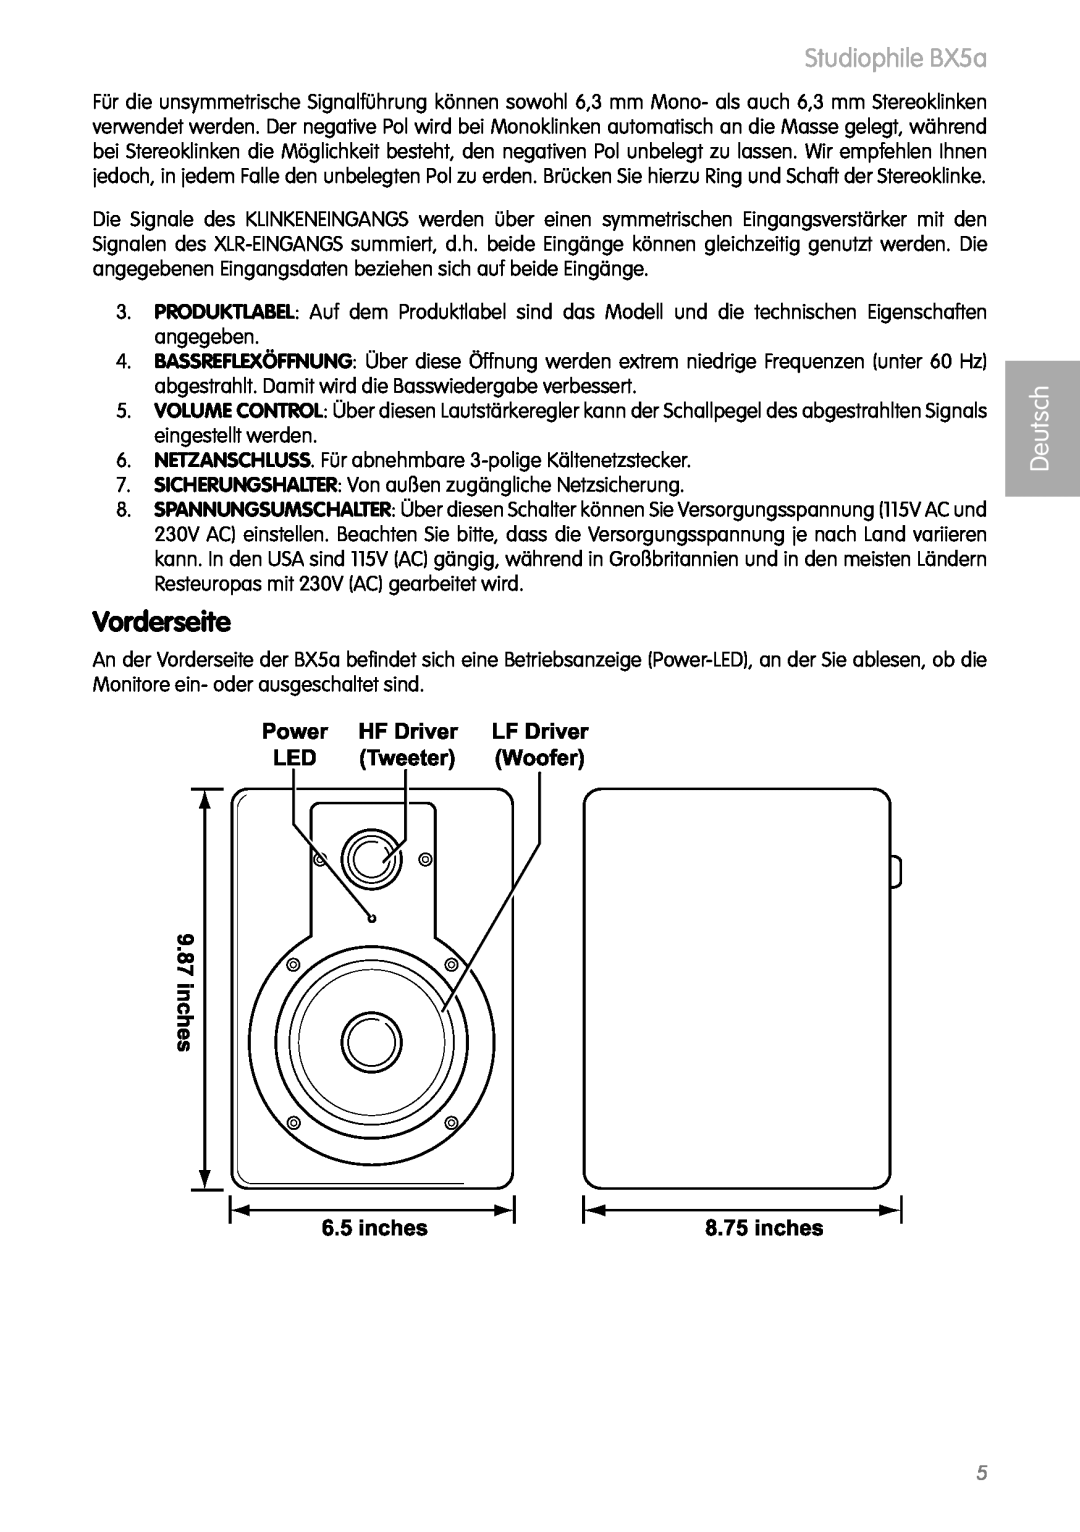 M-Audio manual Vorderseite, Studiophile BX5a, Deutsch 